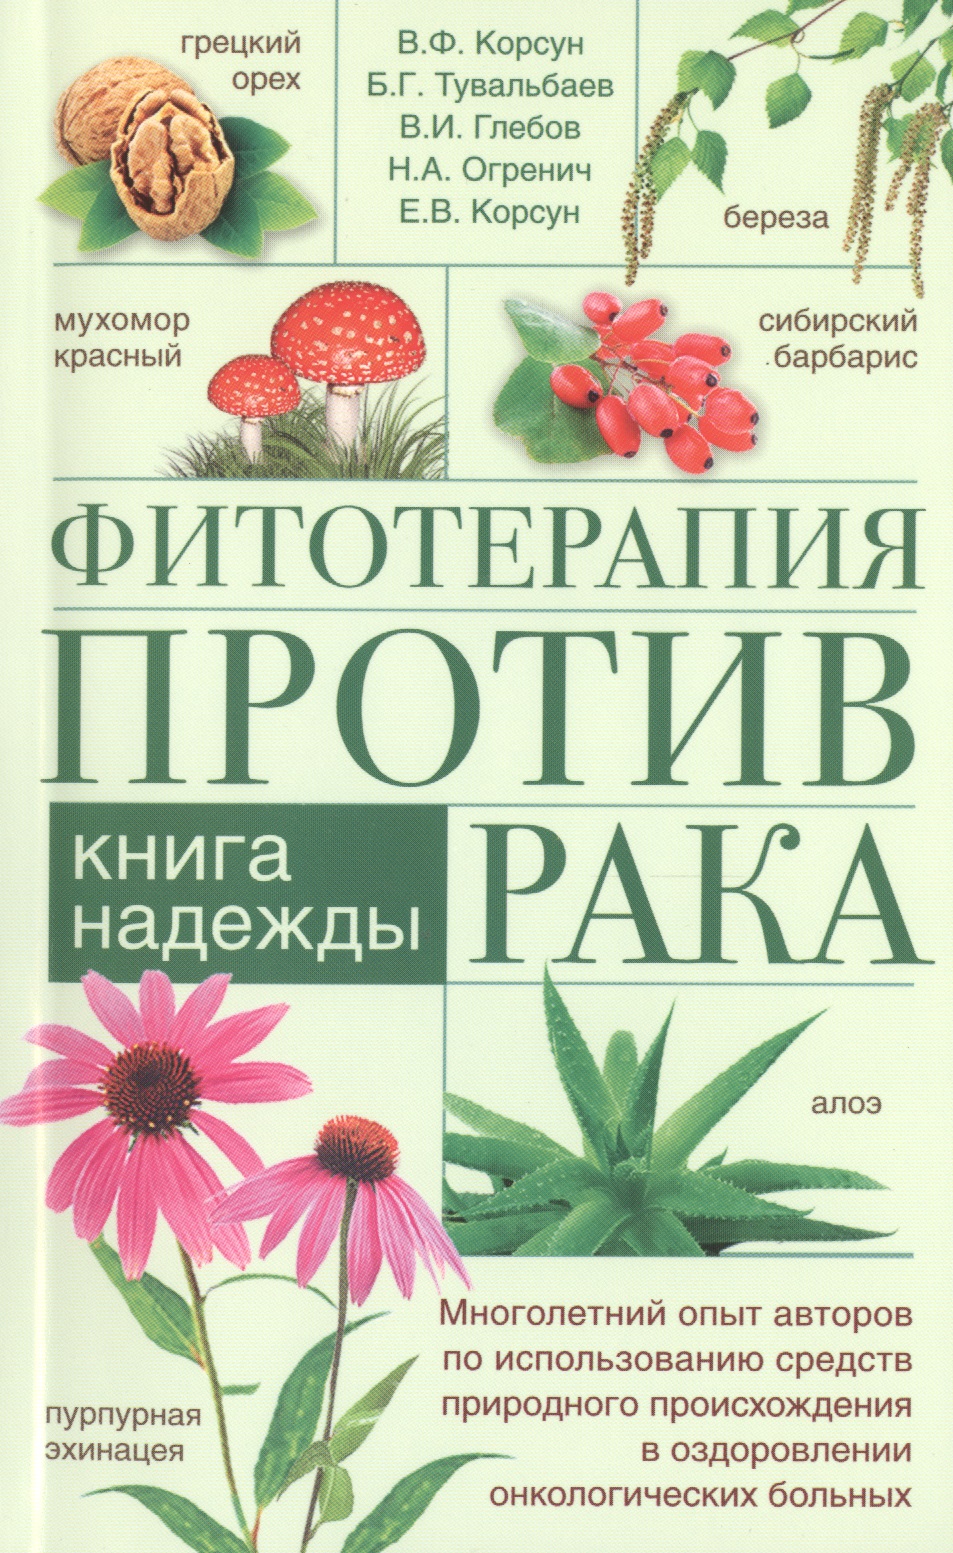 Корсун Владимир Федорович - Фитотерапия против рака. Книга надежды